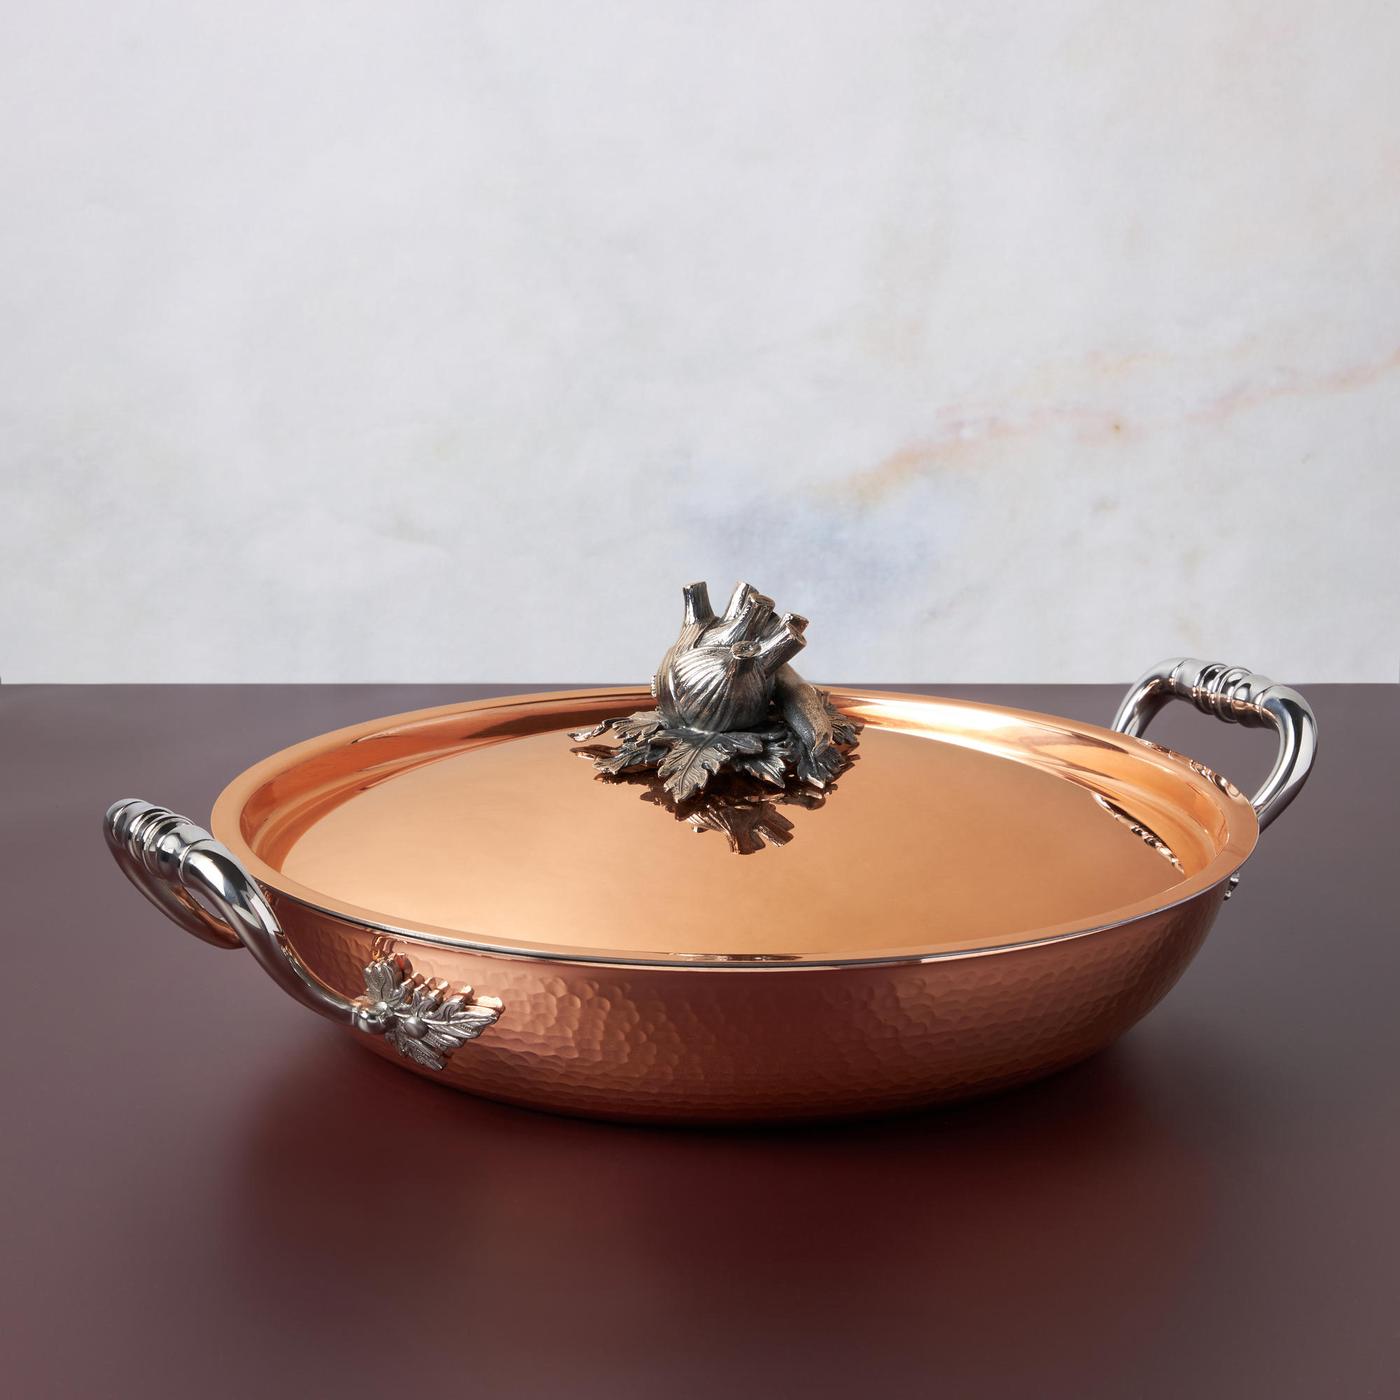 Ruffoni Symphonia Cupra 4-Quart Chef's Pan, Copper